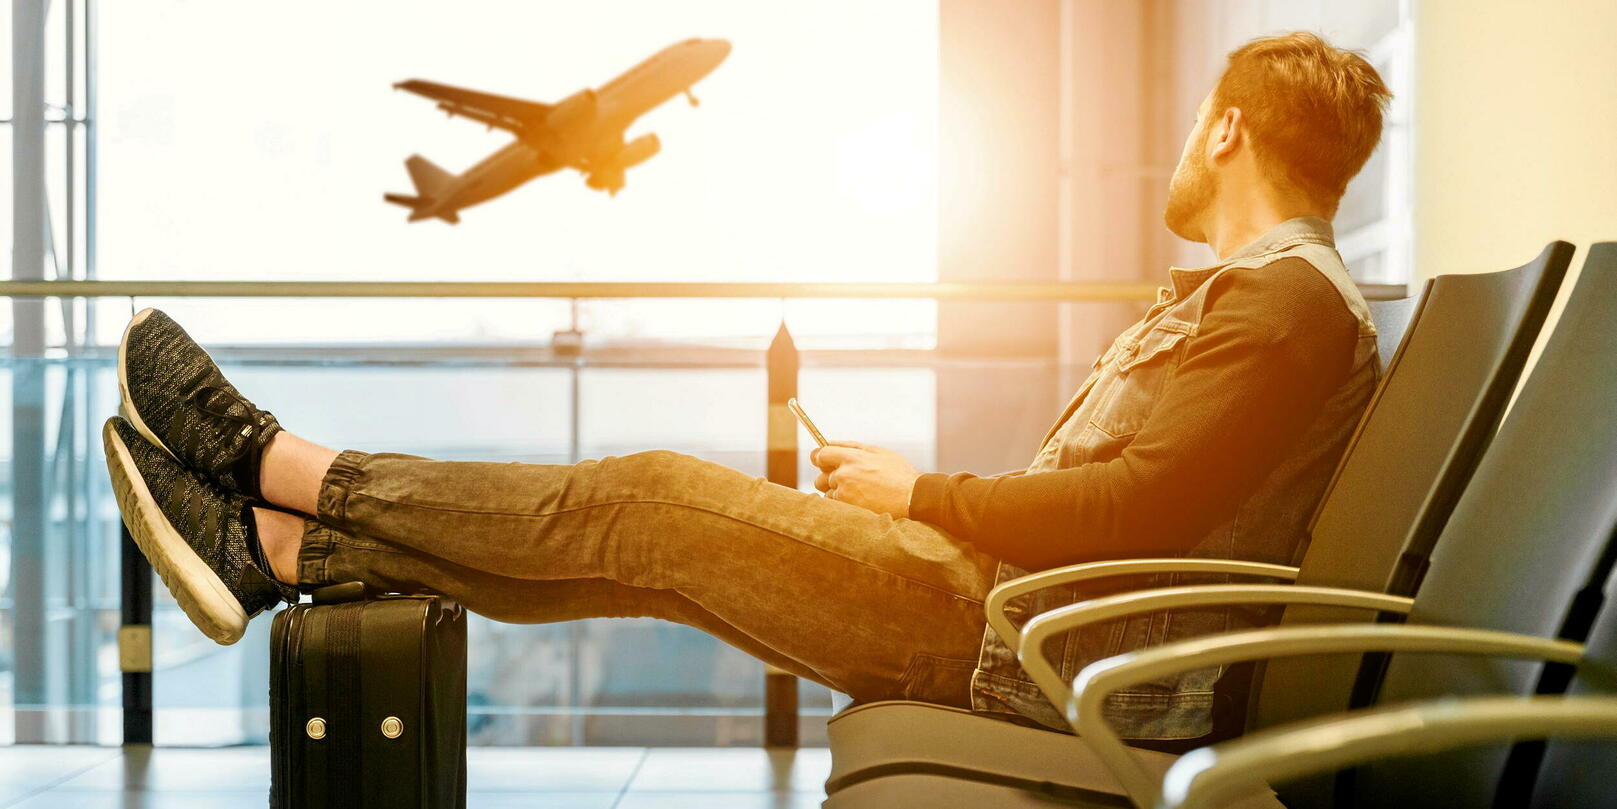 Quelle valise cabine choisir pour l'avion ?